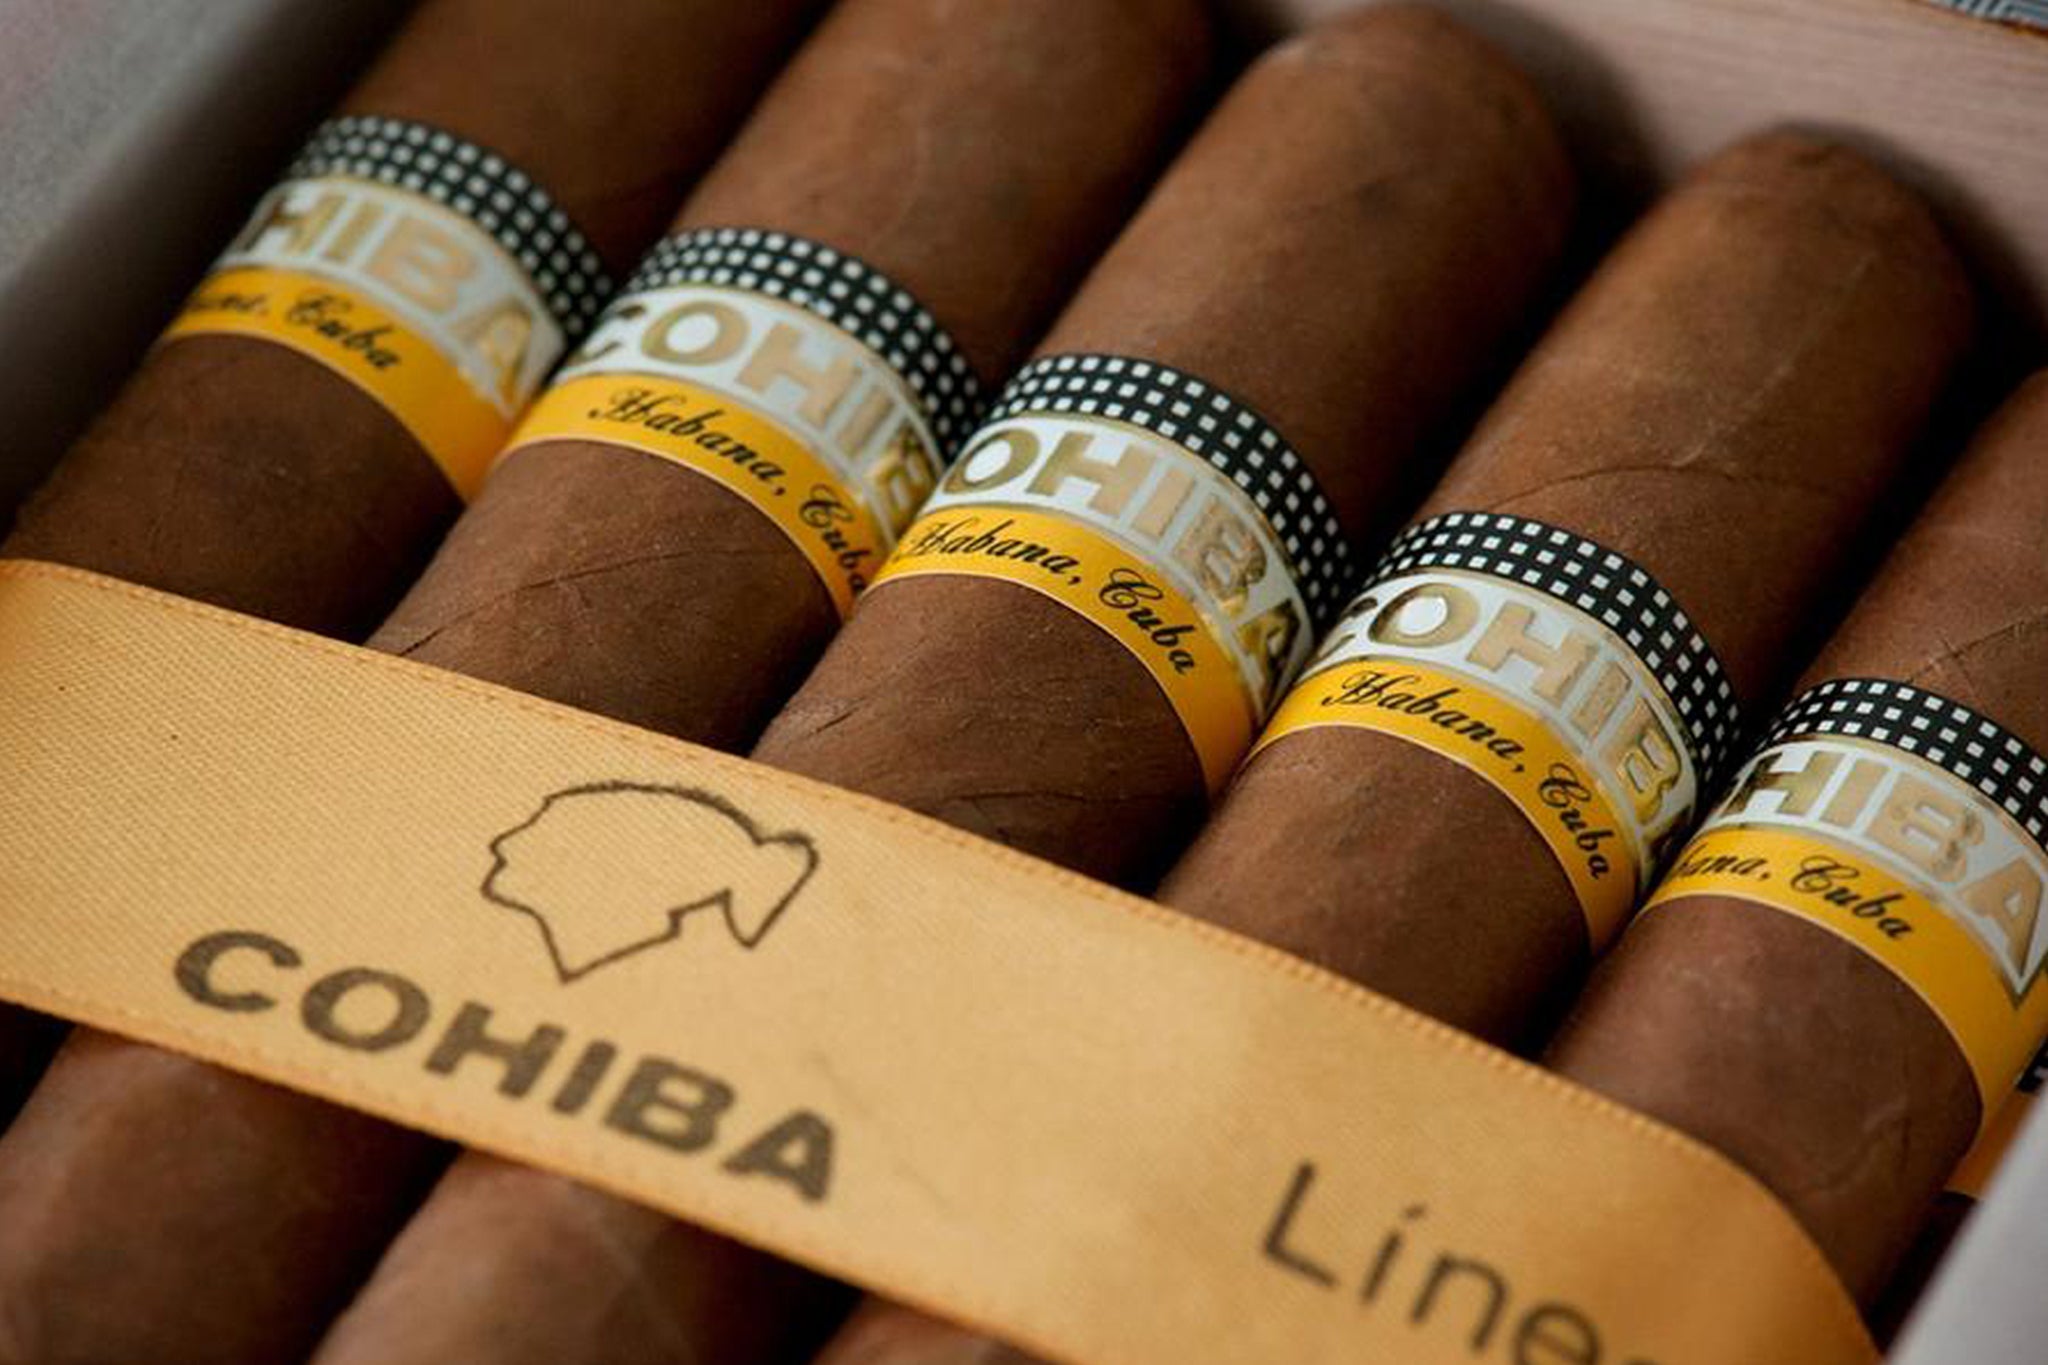 Brief History of Cohiba: Fidel Castro's All-time Favourite Cigar